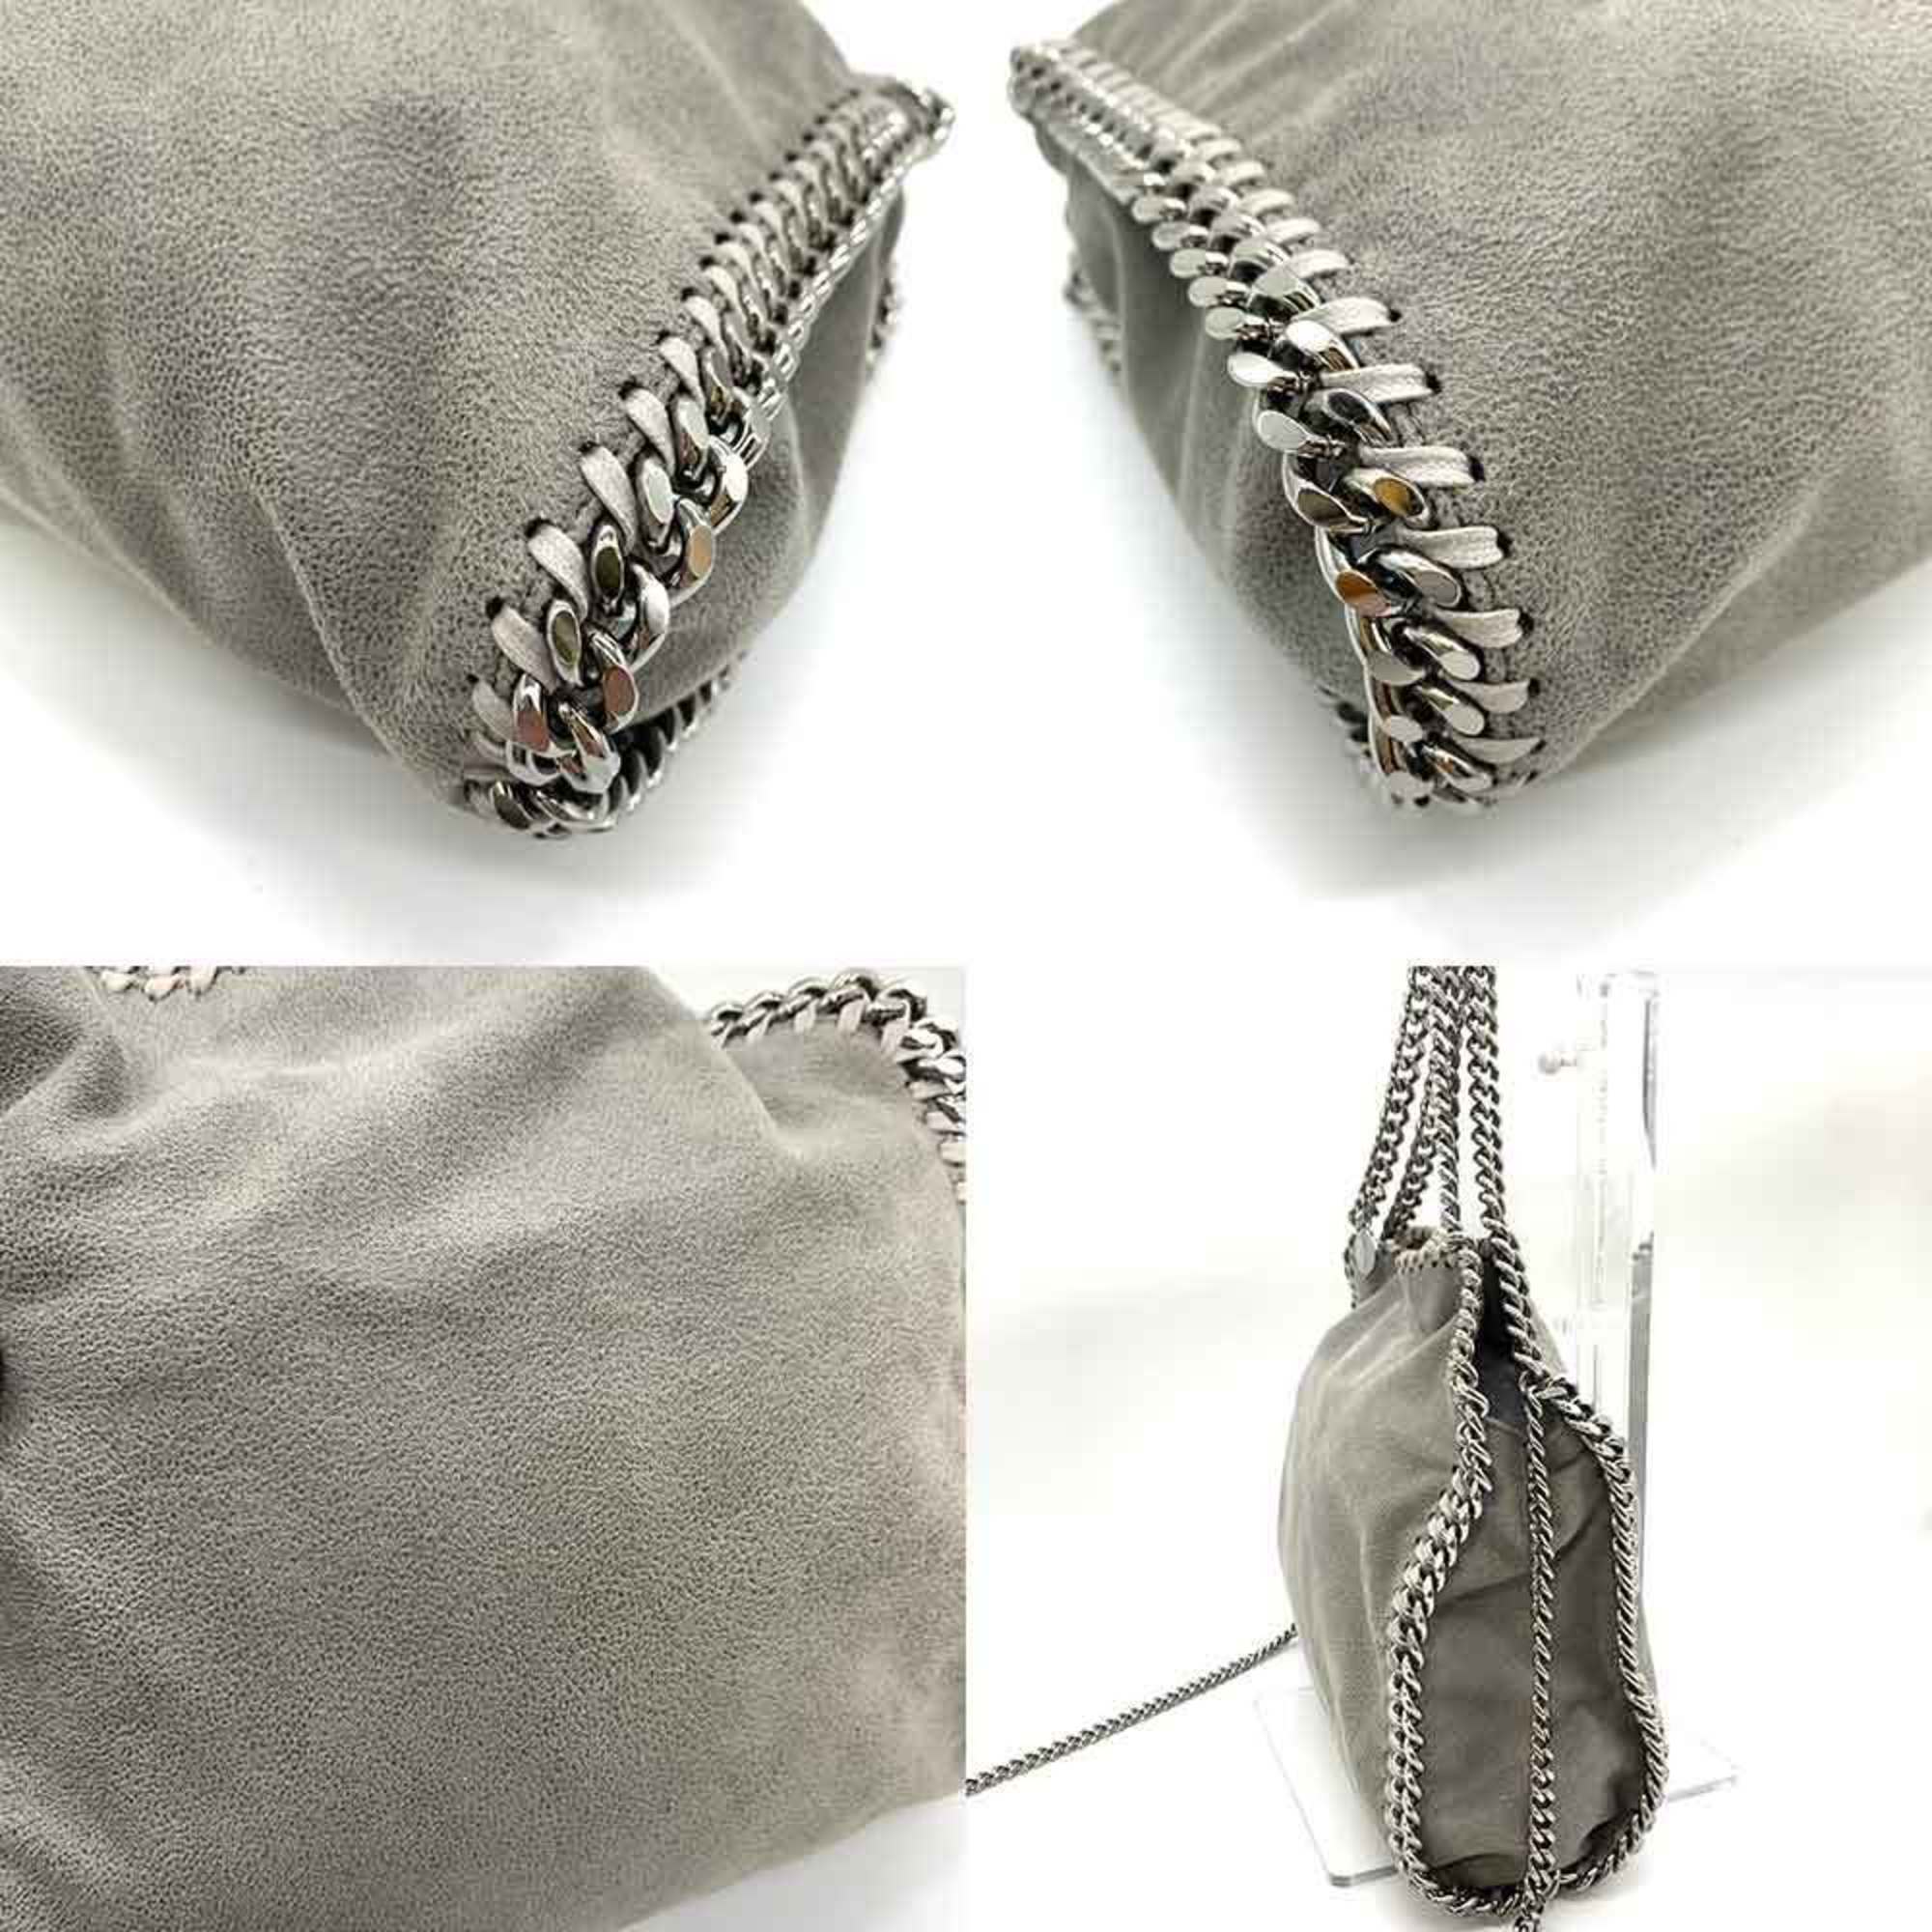 Stella McCartney Bag Falabella Chain Shoulder Grey Handbag 2way Women's Faux Leather 371223 STELLAMcCARTNEY